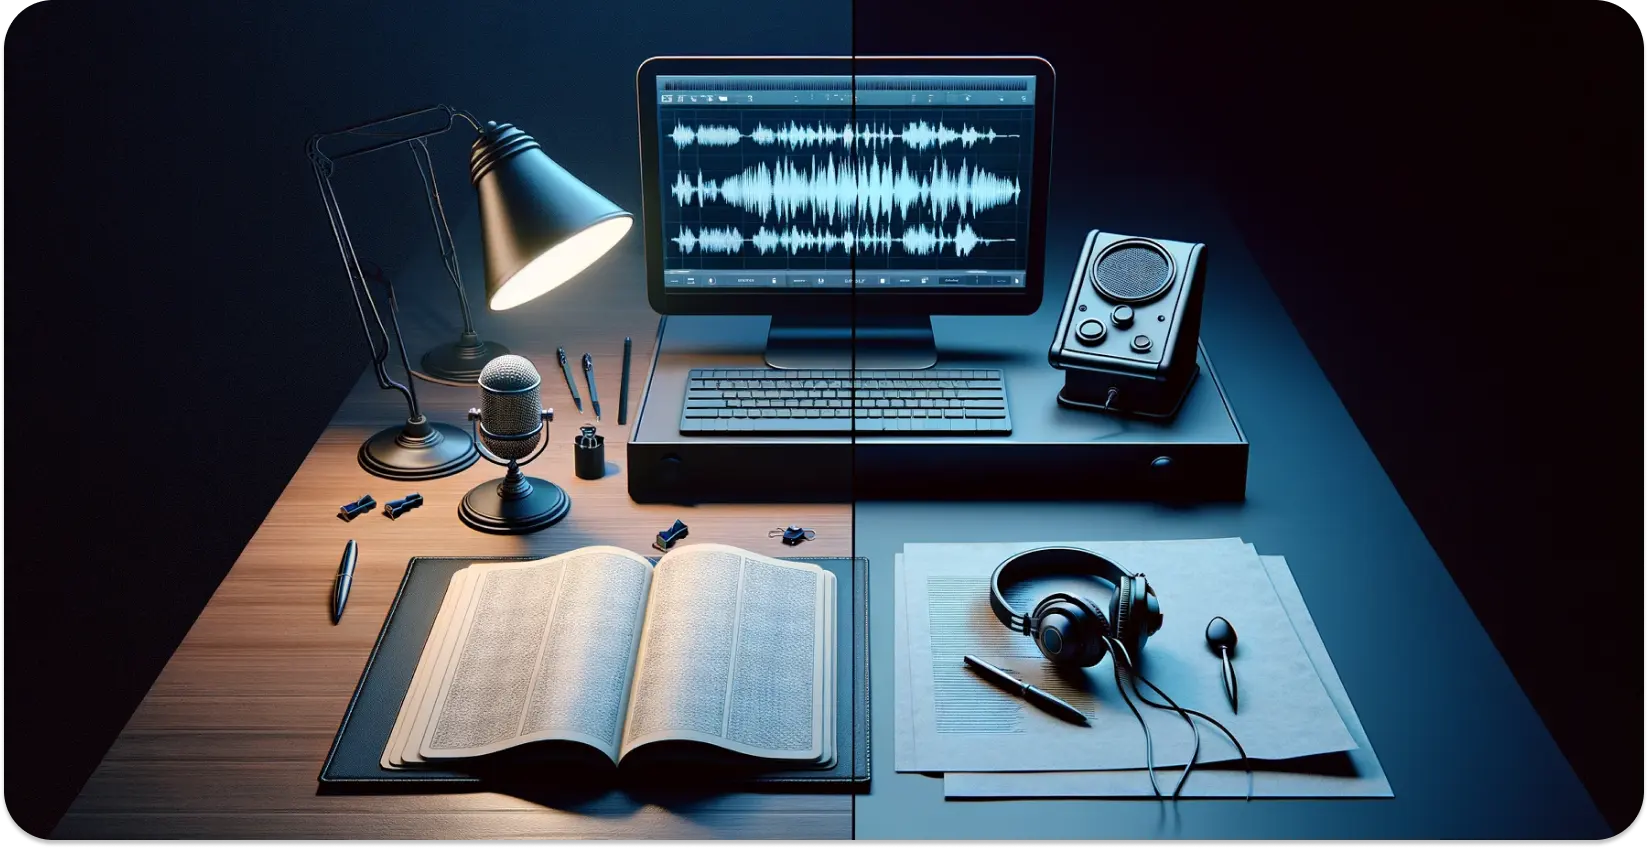 Pengaturan transkripsi modern dengan mikrofon, buku terbuka, dan bentuk gelombang di layar monitor.